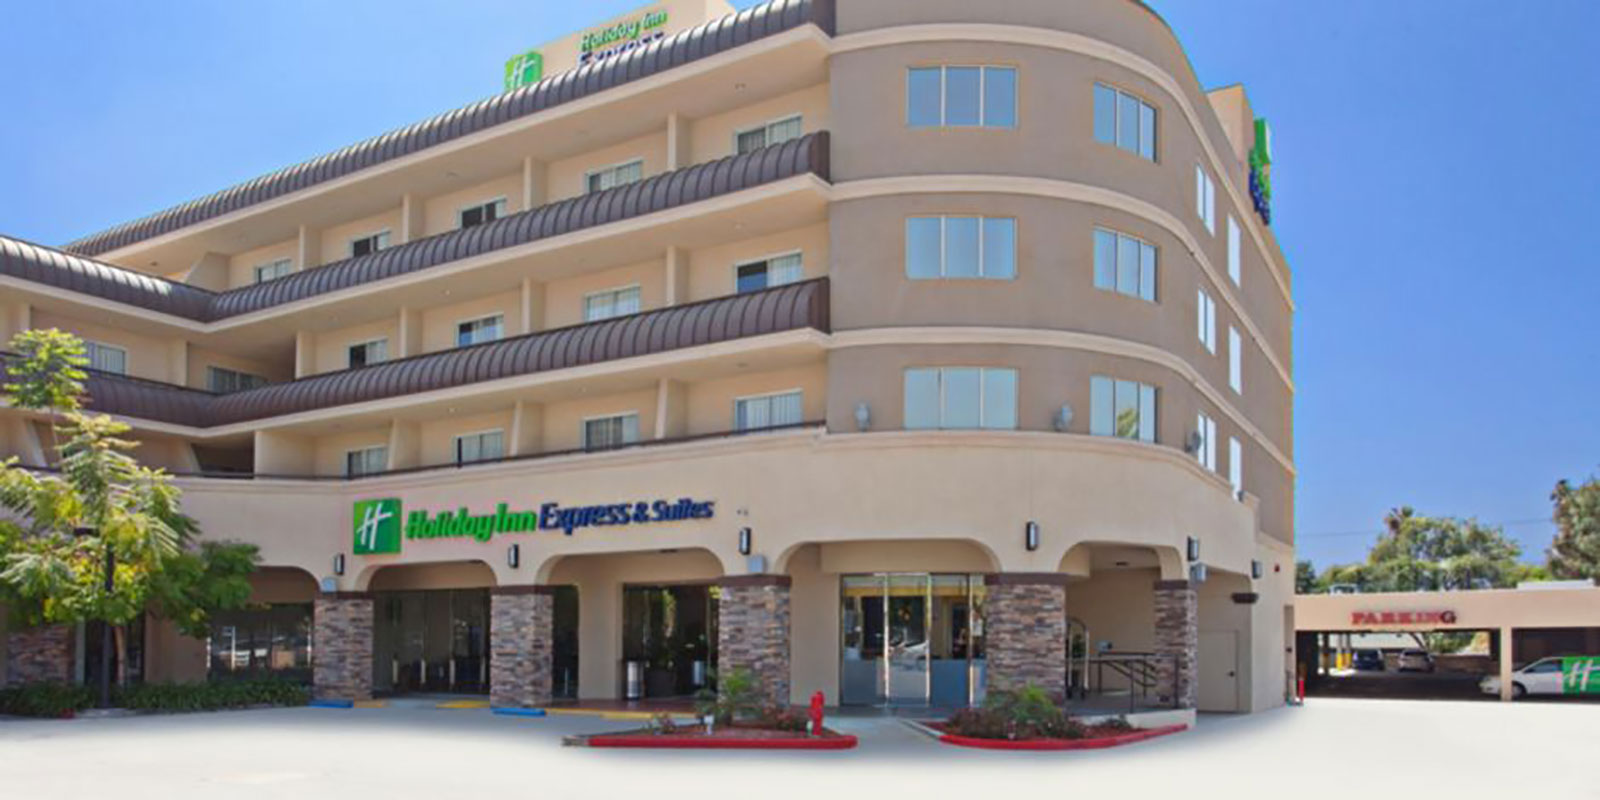 Holiday Inn Express Pasadena 1